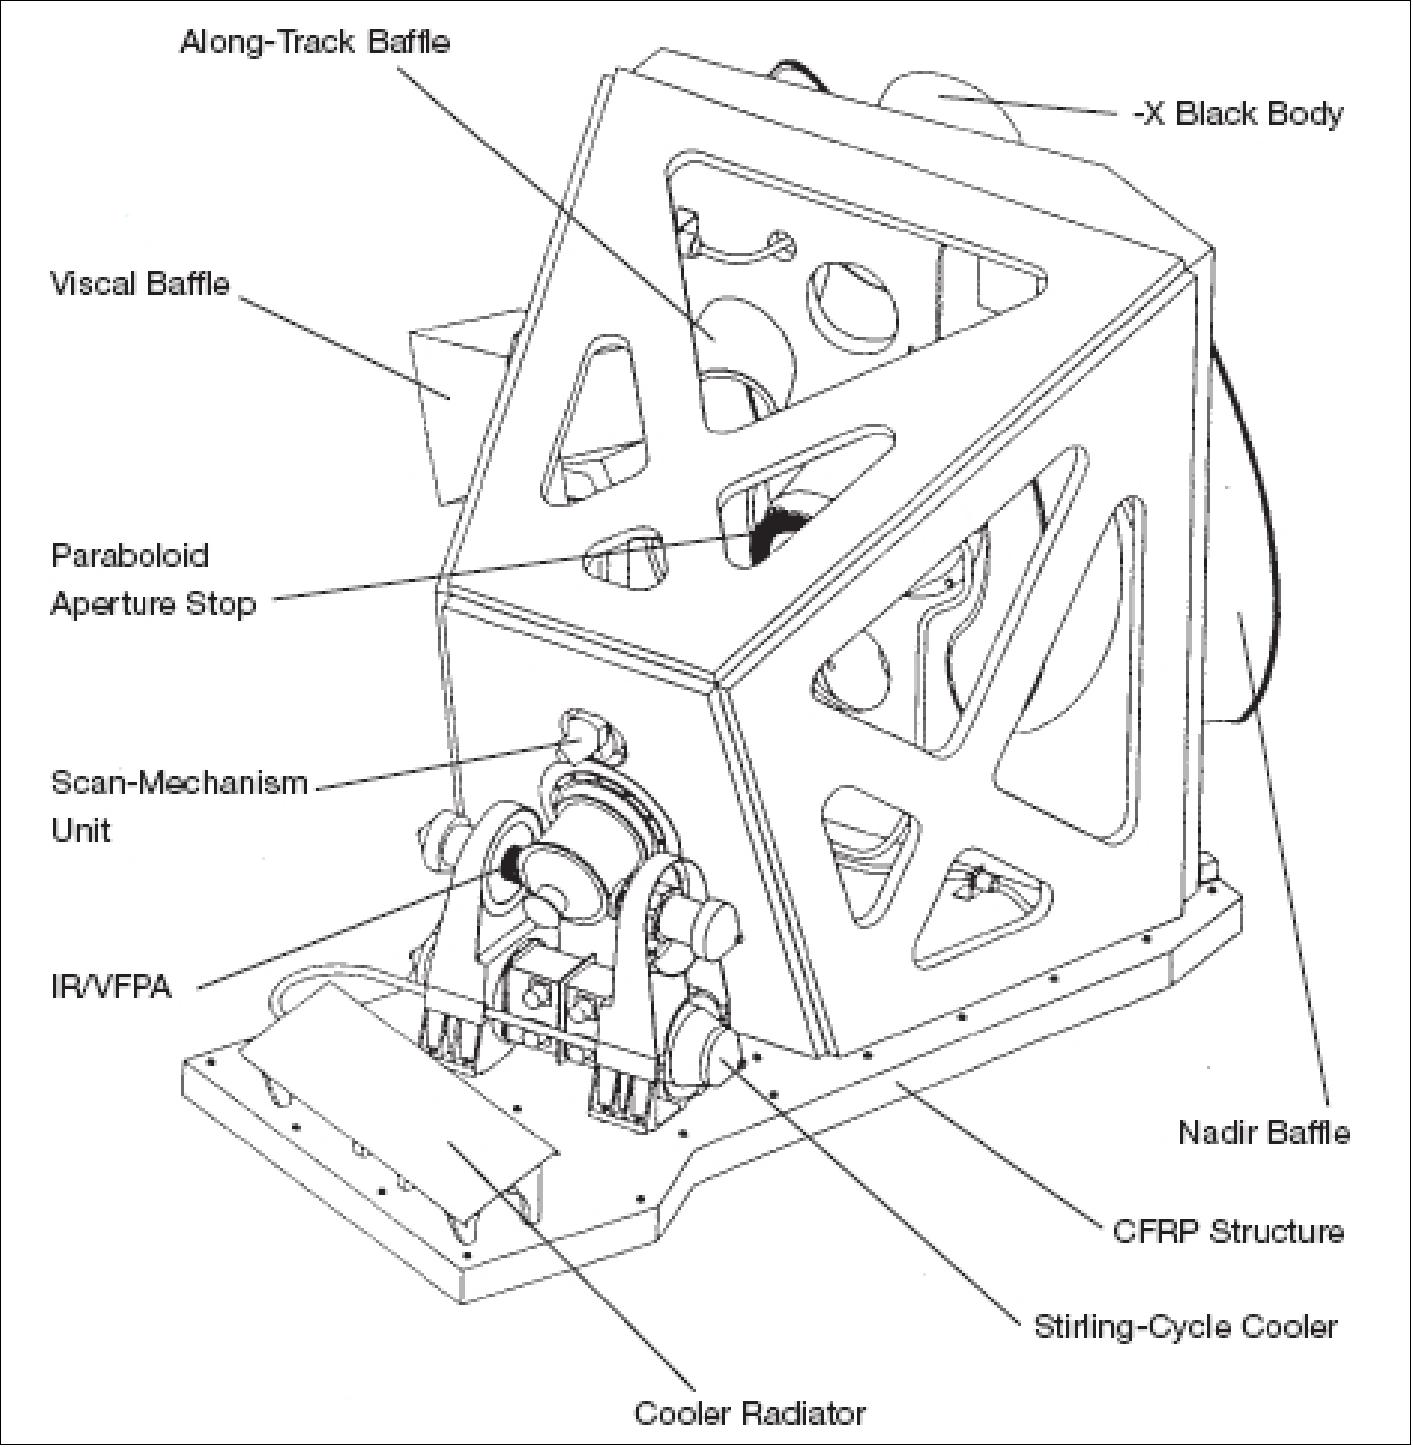 Figure 54: Schematic view of the AATSR instrument (image credit: ESA)